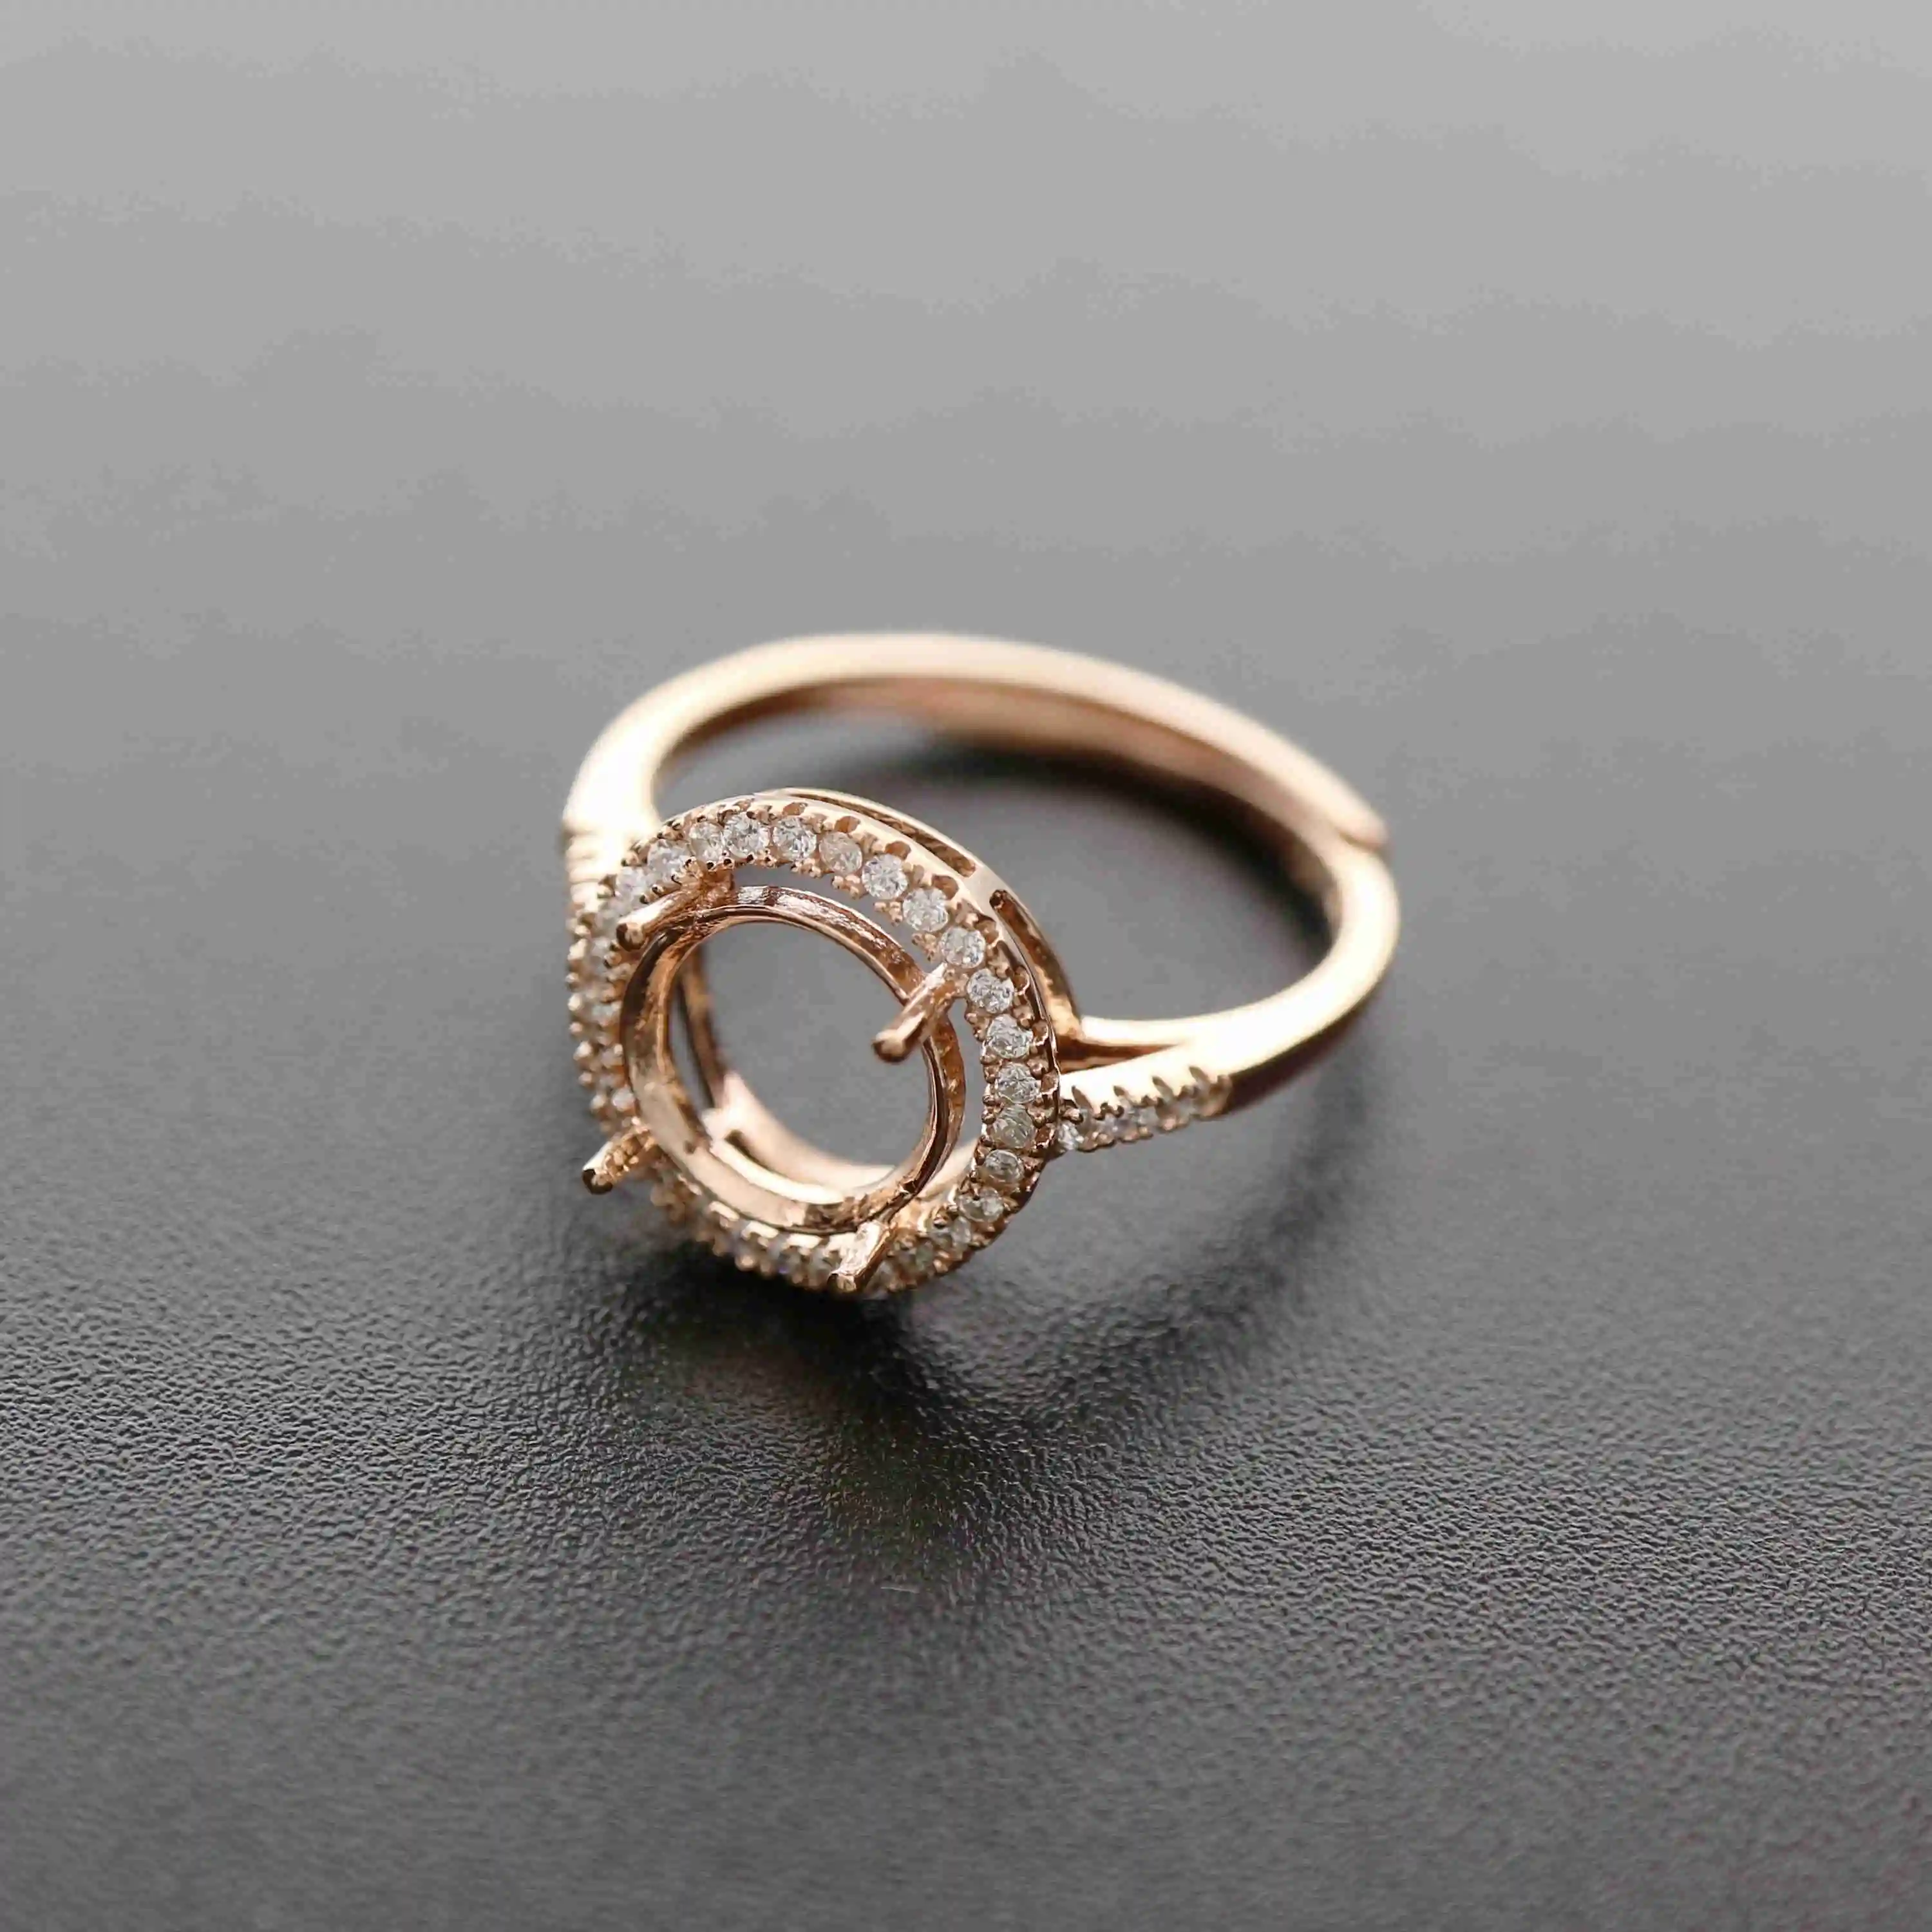 6-10MM ronda de oro rosa de plata Joyas CZ piedra puntas bisel sólida plata de ley 925 anillo ajustable configuración 1210031 4